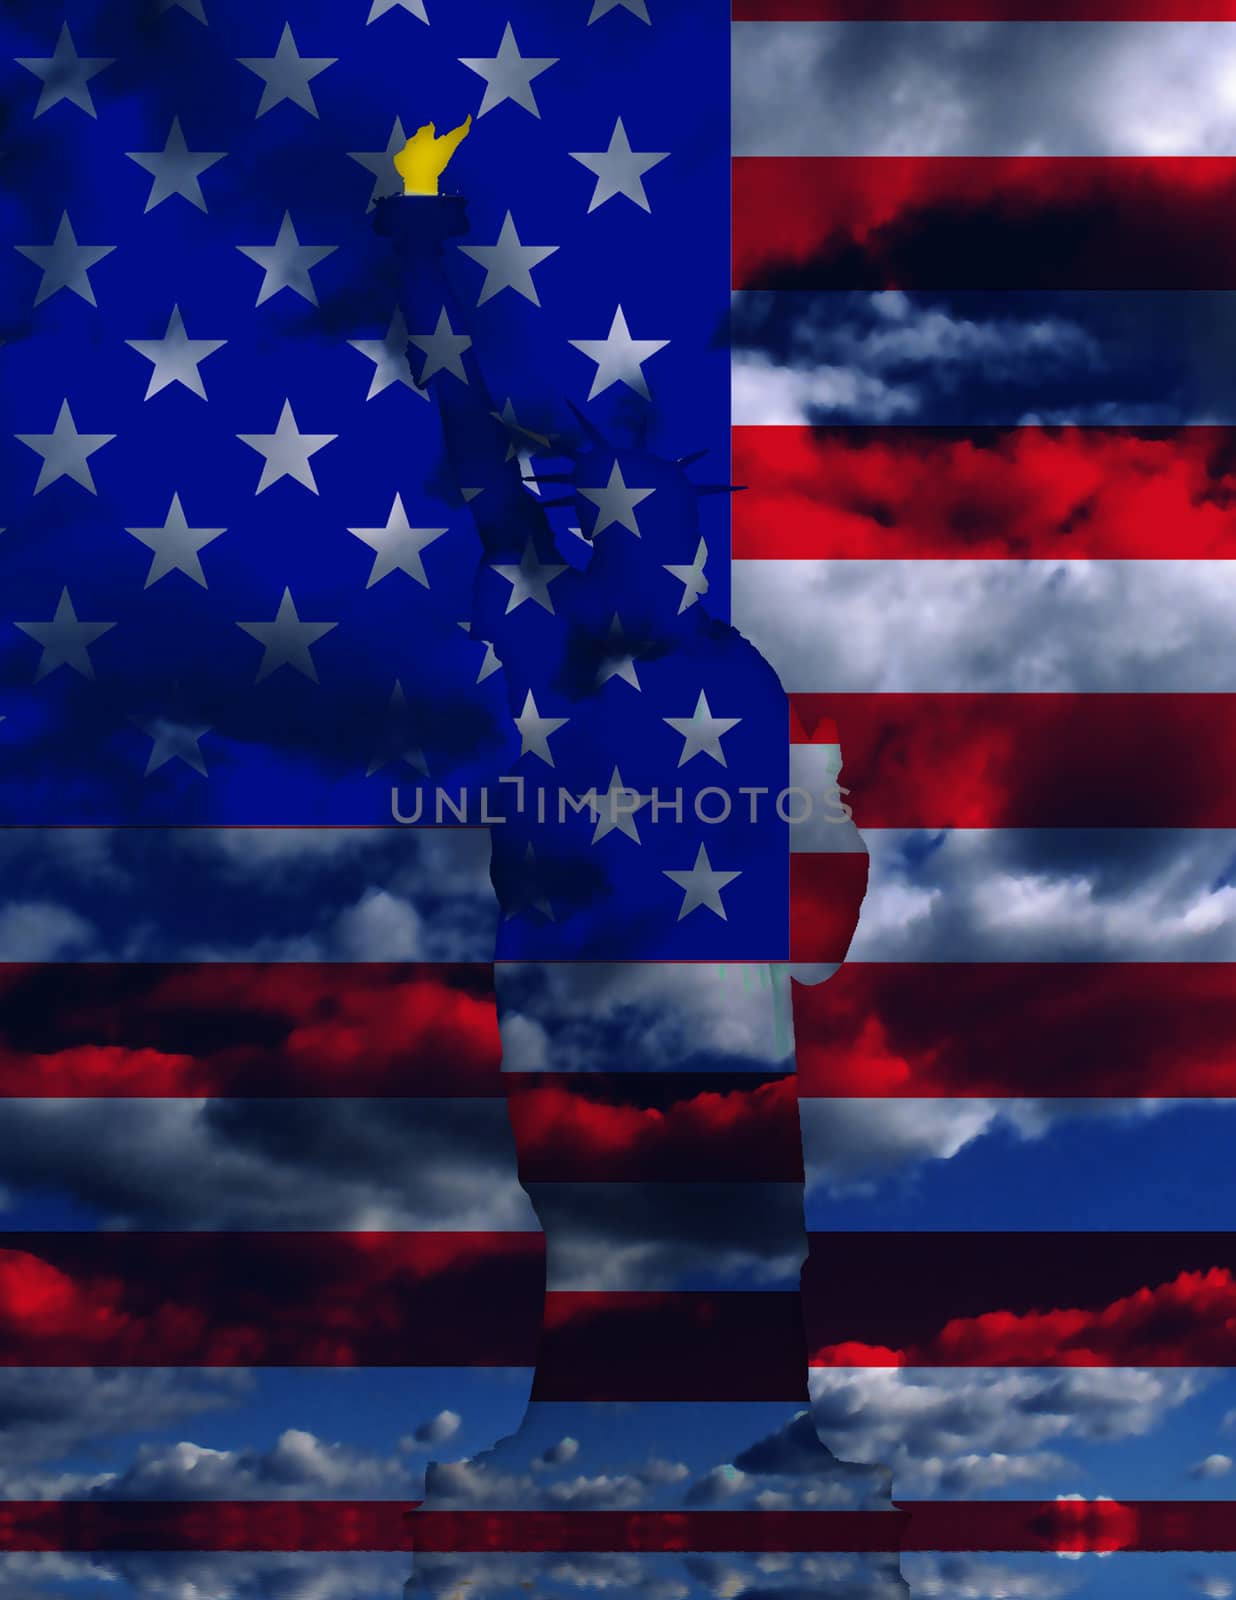 Surreal digital art. USA Flag over clouds. 3D rendering